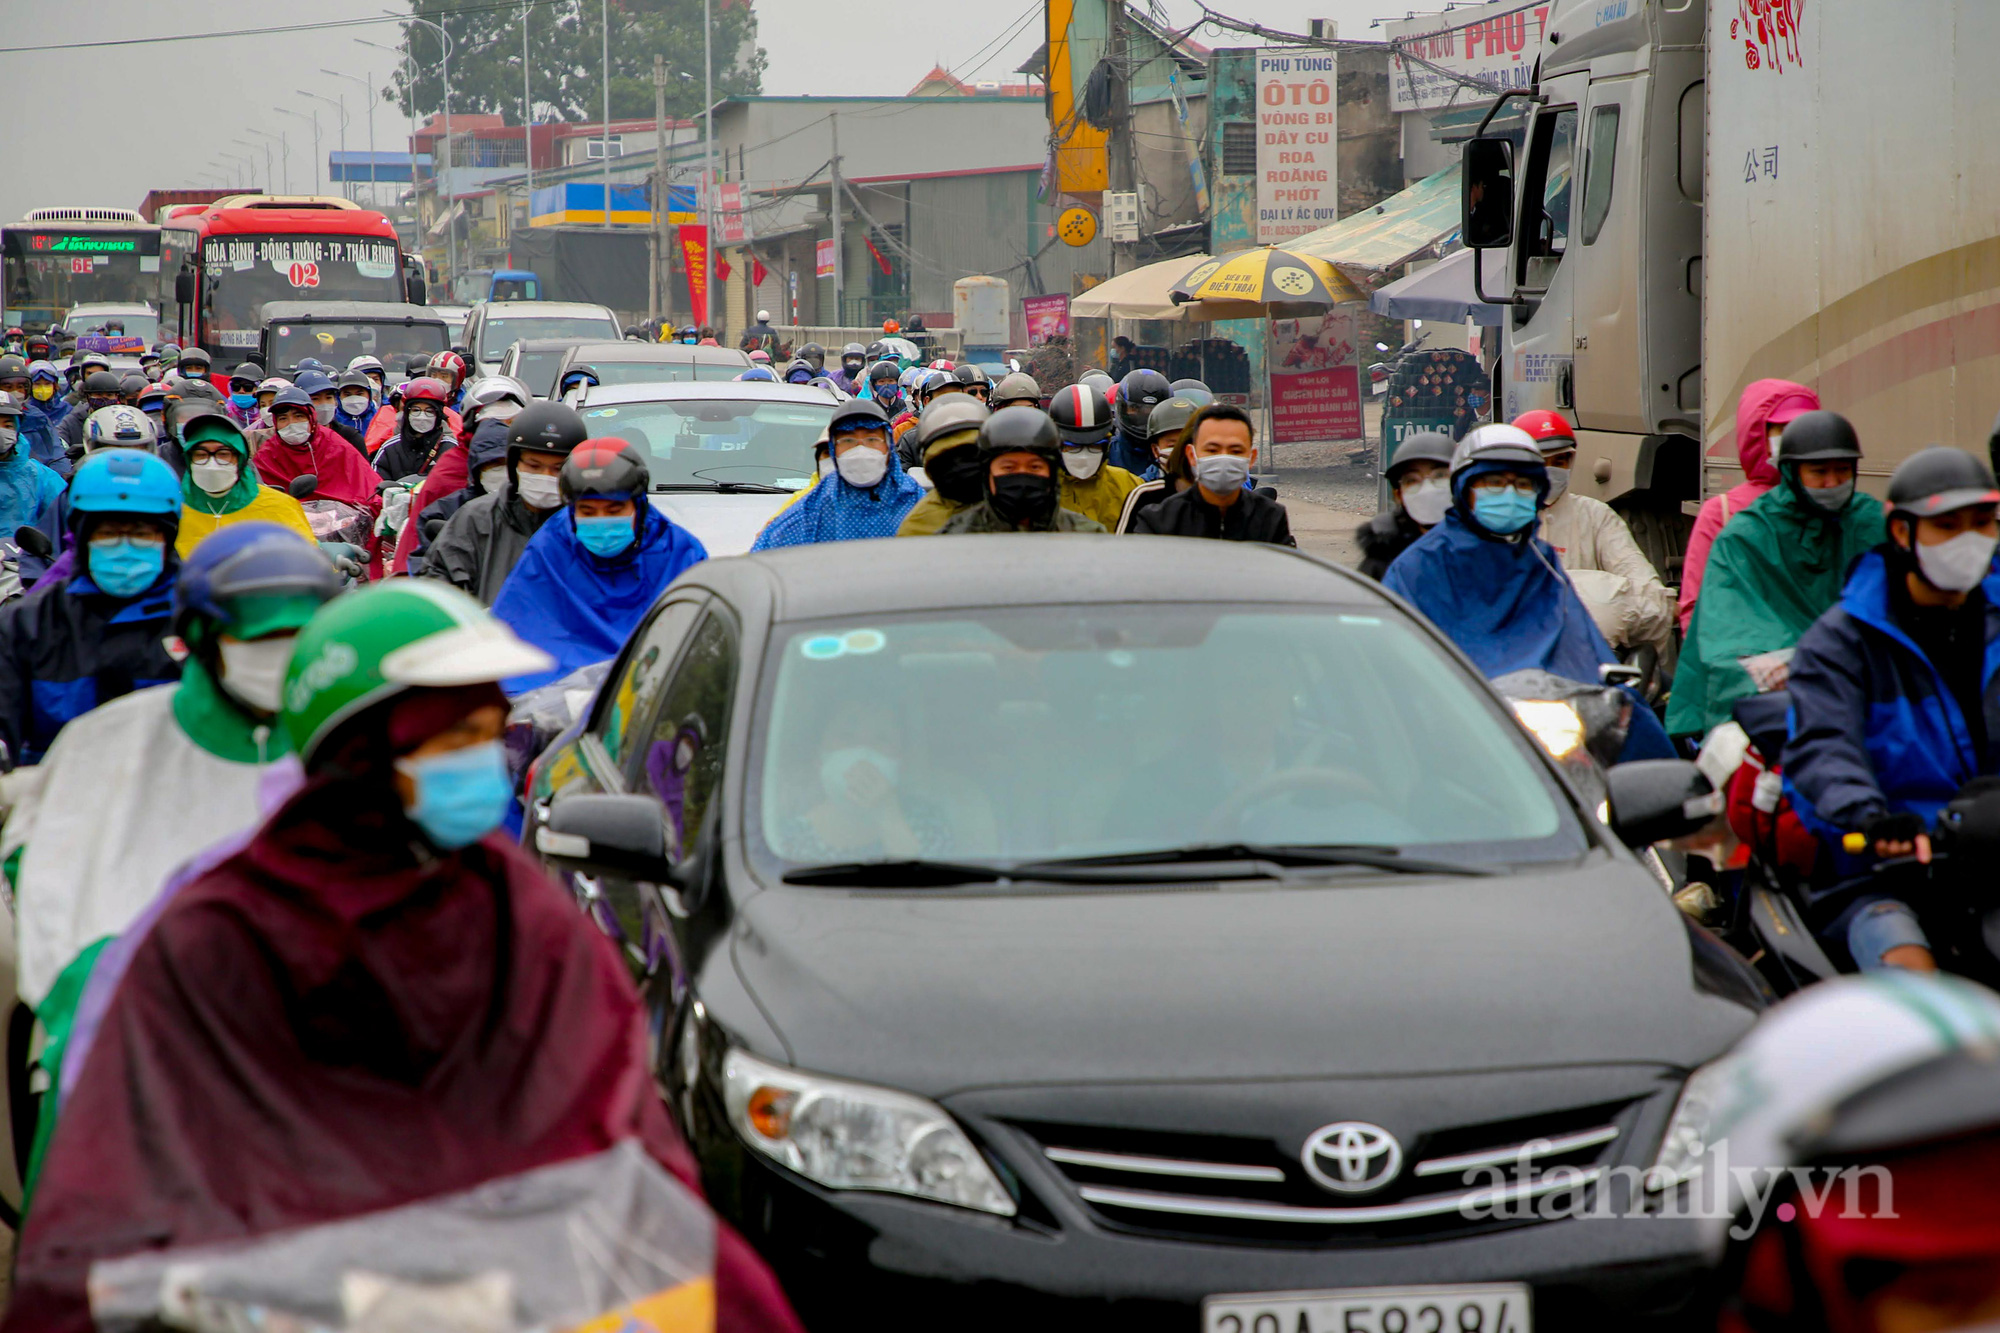 Hà Nội: Hàng nghìn người chạy xe máy trùm kín áo mưa, ùn ùn rời phố về quê ăn Tết - Ảnh 7.